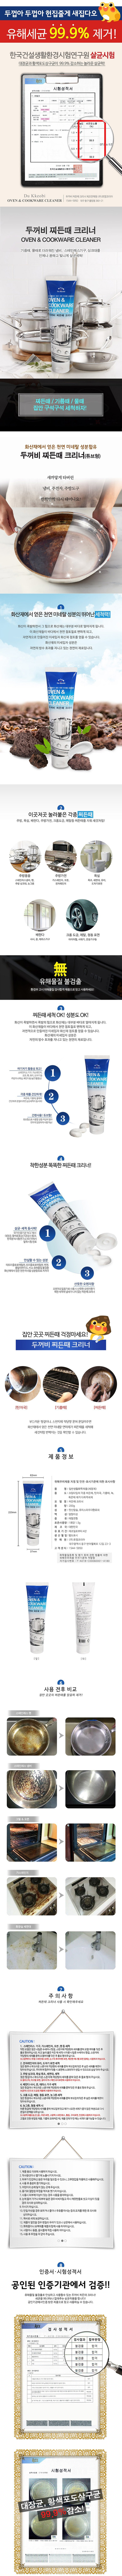 韓國 du kkeobi 韓國 清潔劑 去油 清潔劑